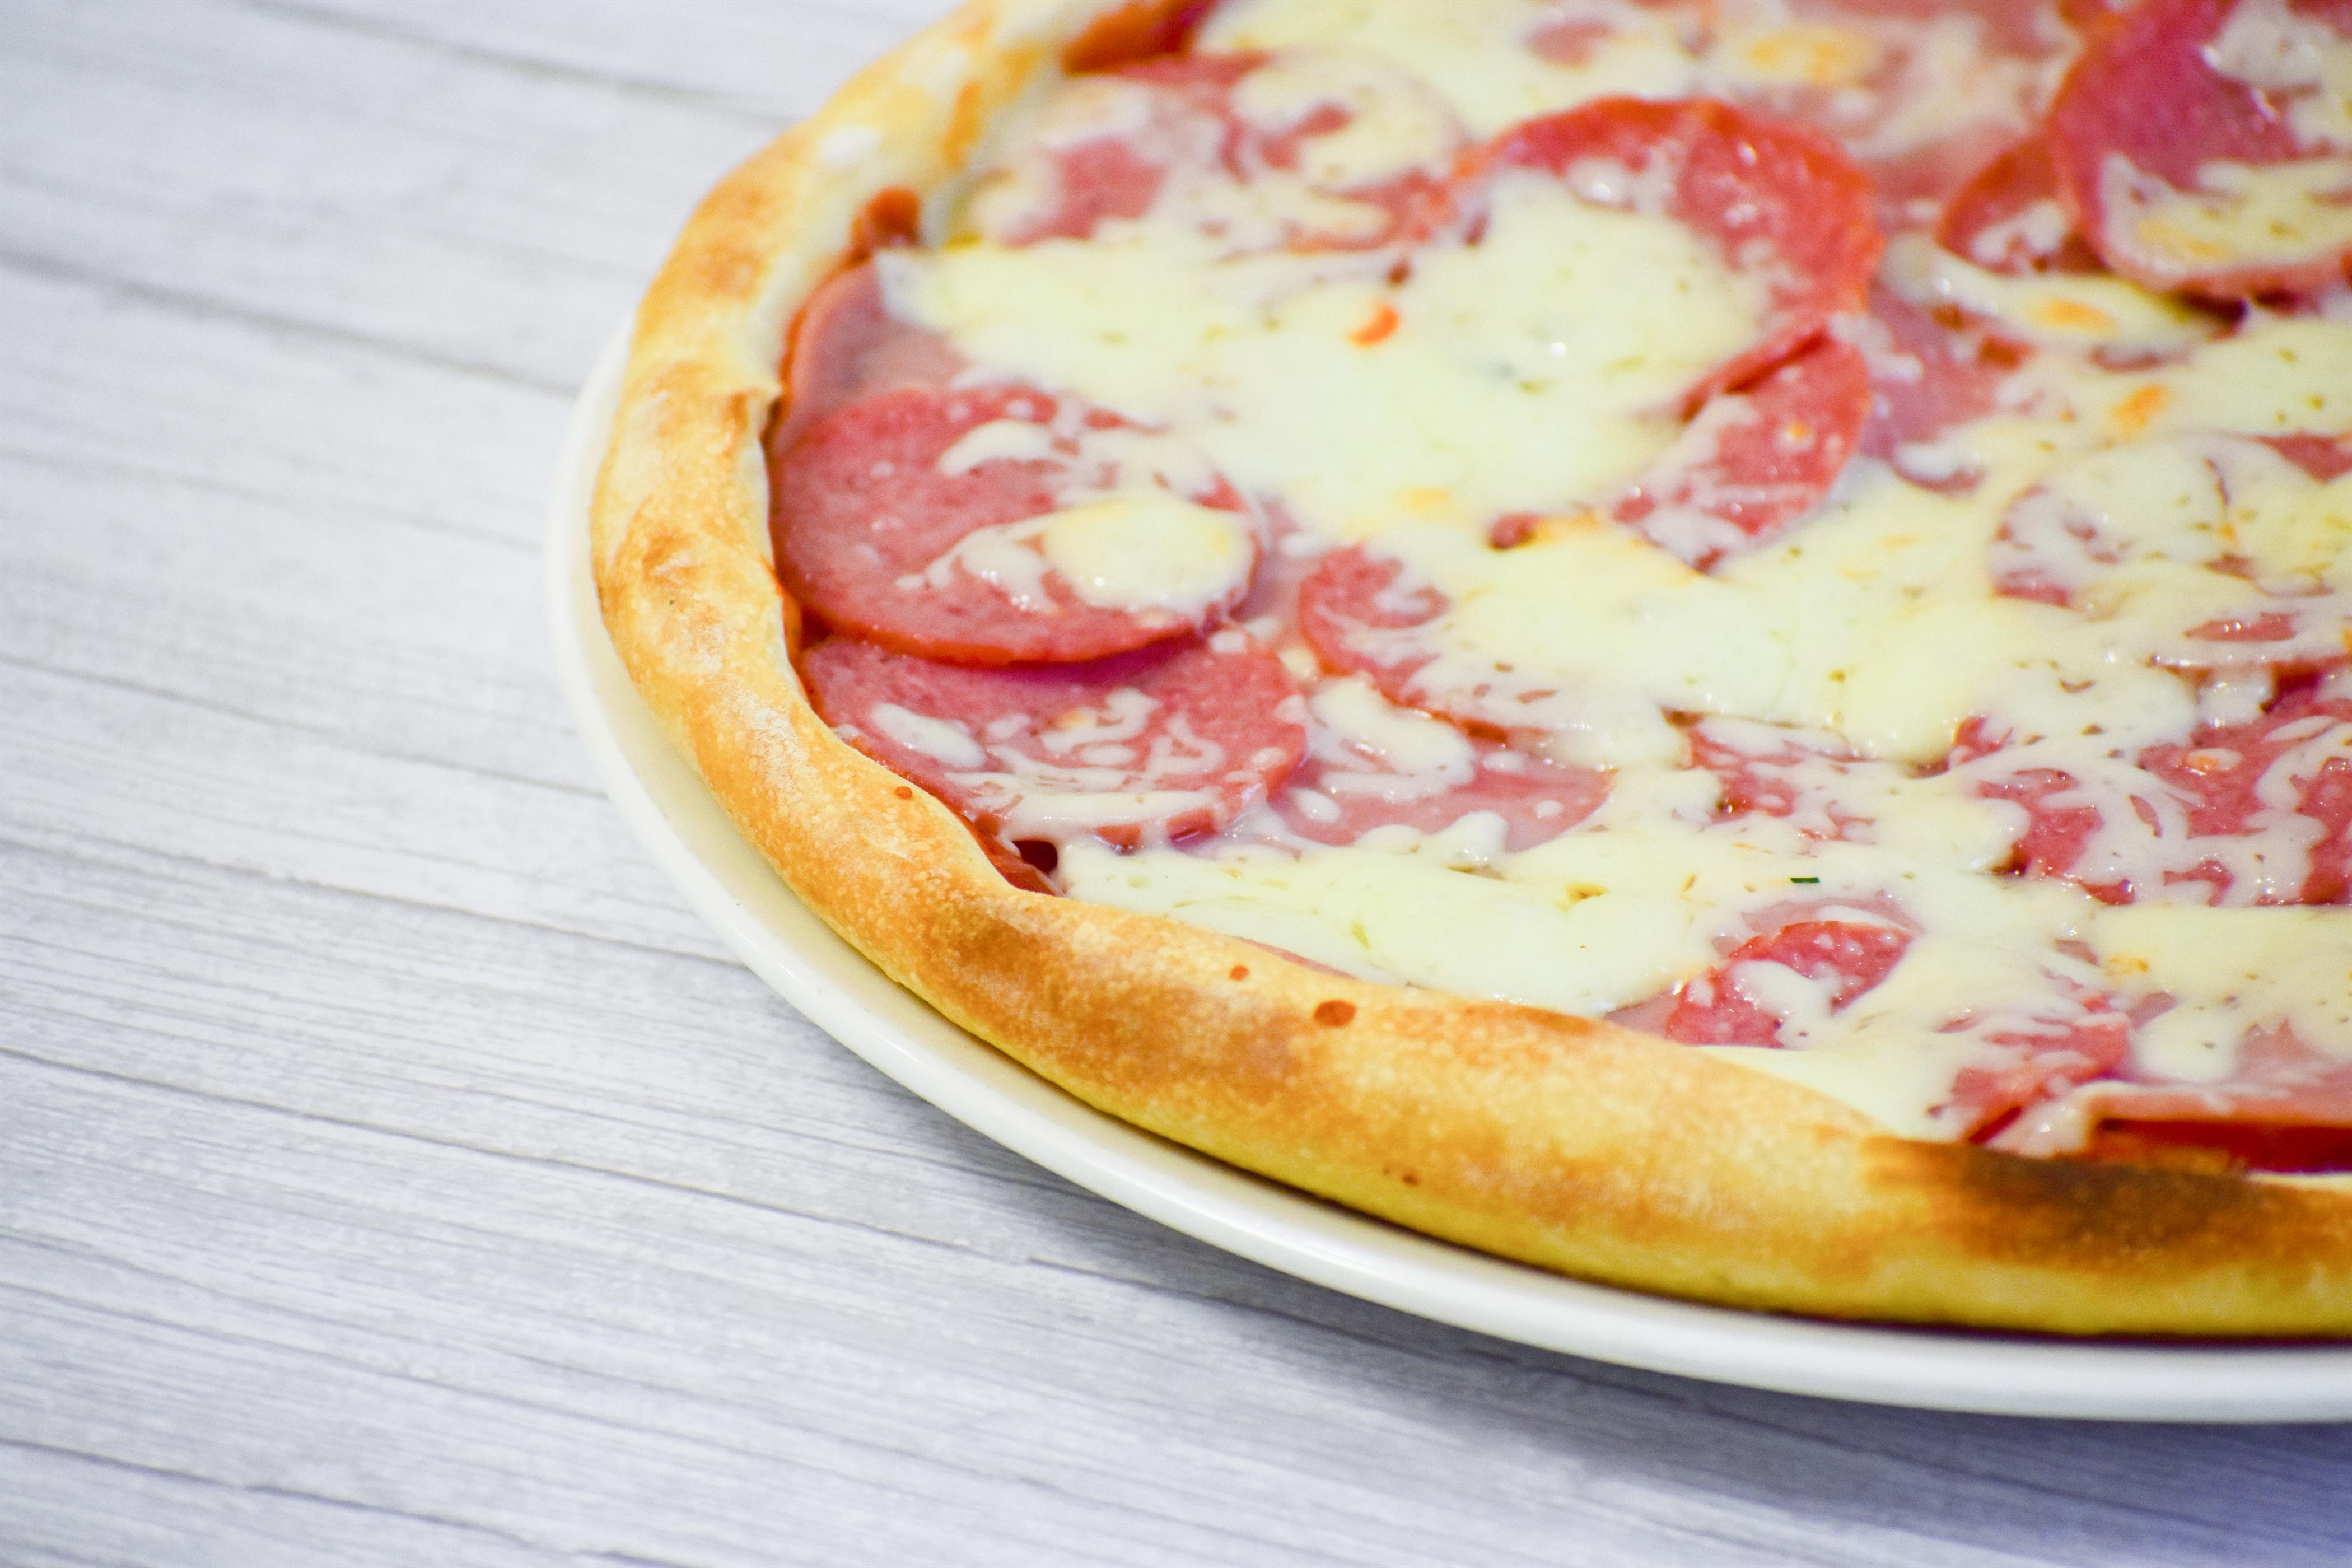 Пицца 24 см. Домашняя пицца с полукопченой колбасой. Заказать пиццу в Йошкар Оле на дом.